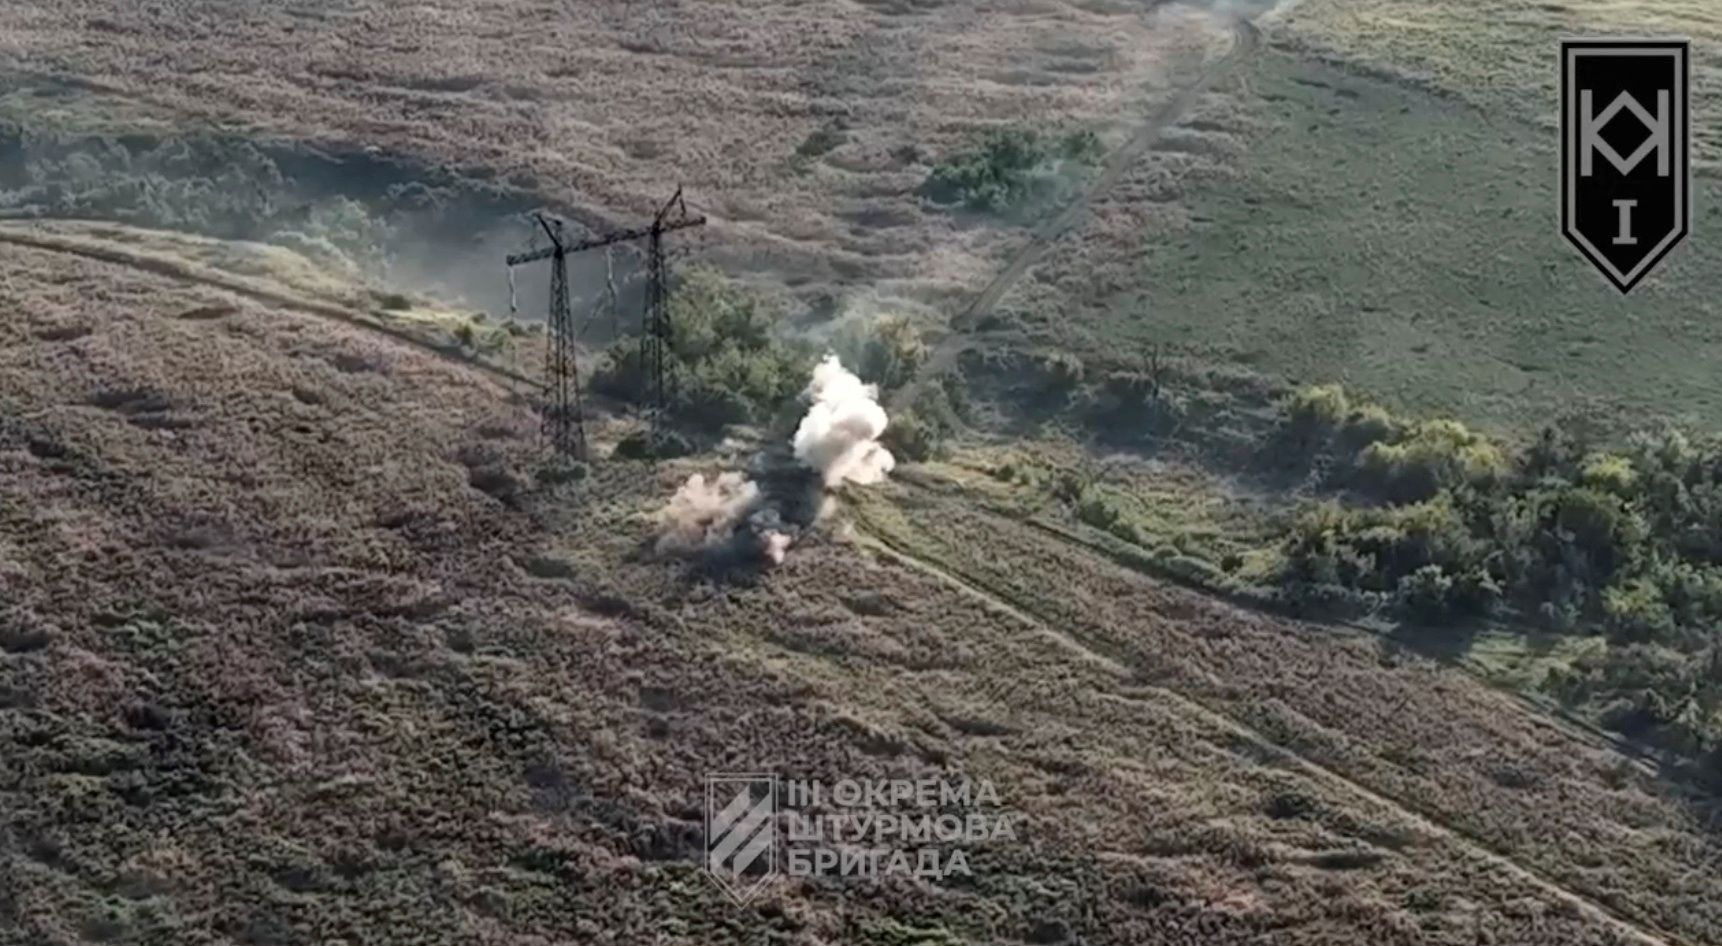 Ukrajinský dron zasáhl ruský obrněný vůz u Andrijivky. Snímek pořídla 3.samostatná útočná brigáda.